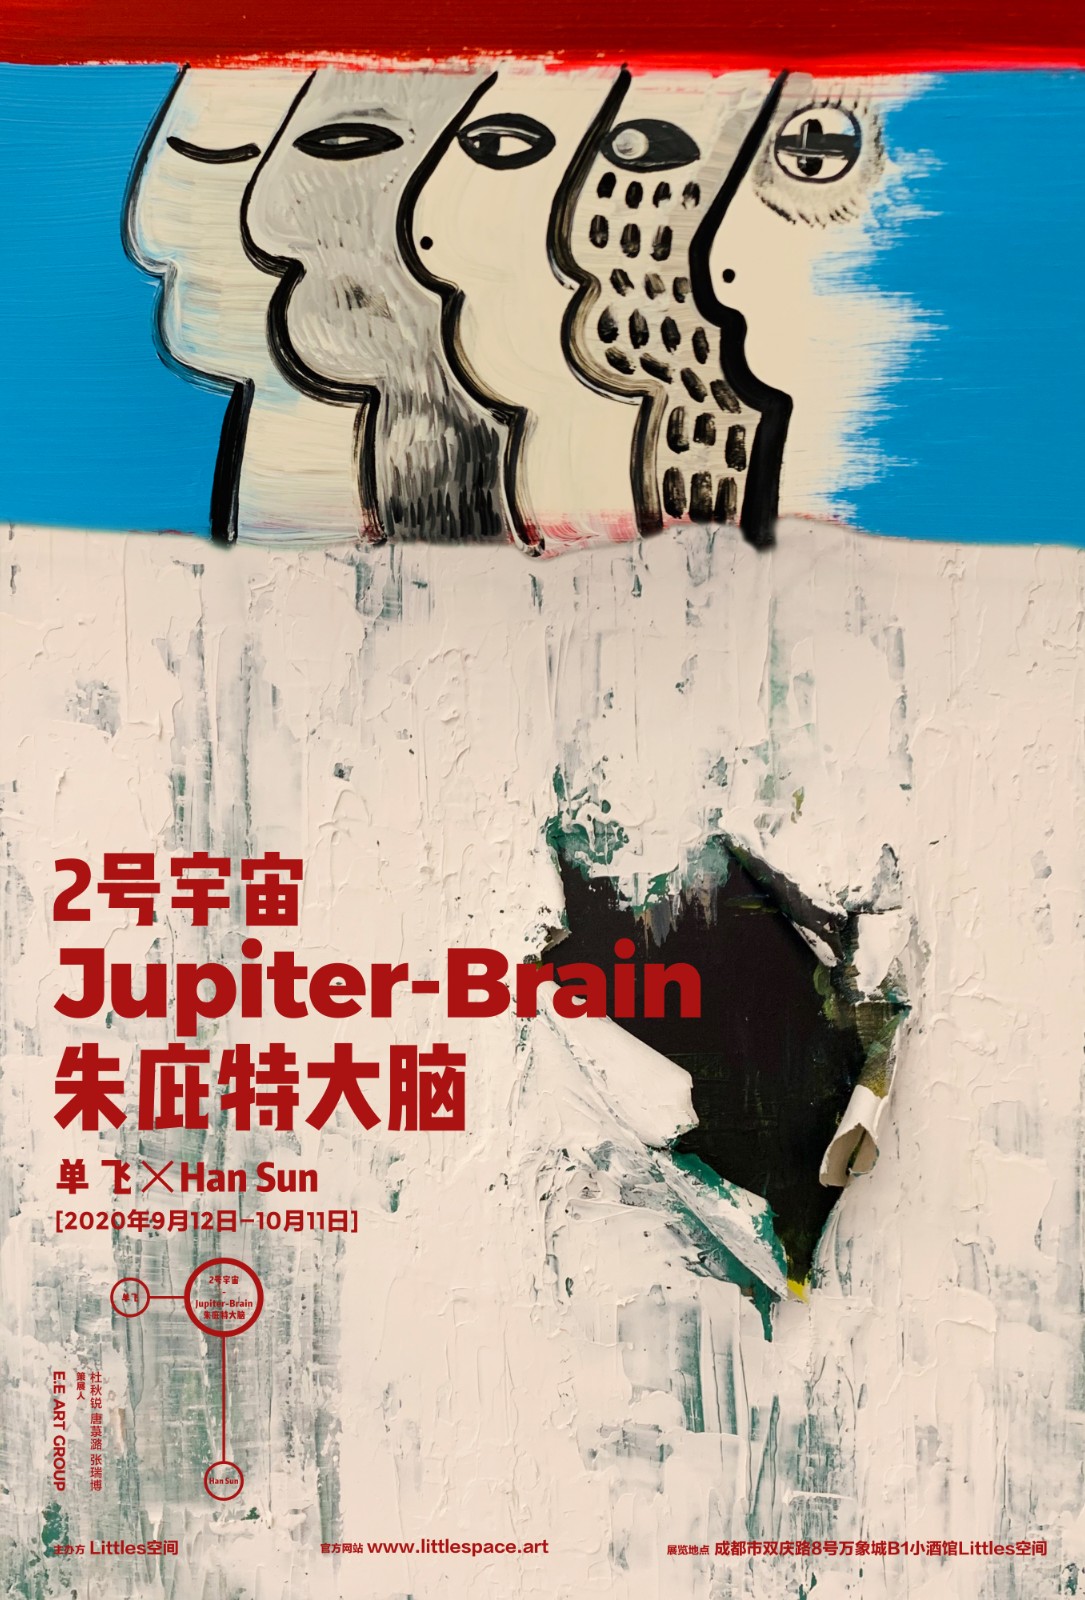 2号宇宙-朱庇特大脑 Jupiter-Brain